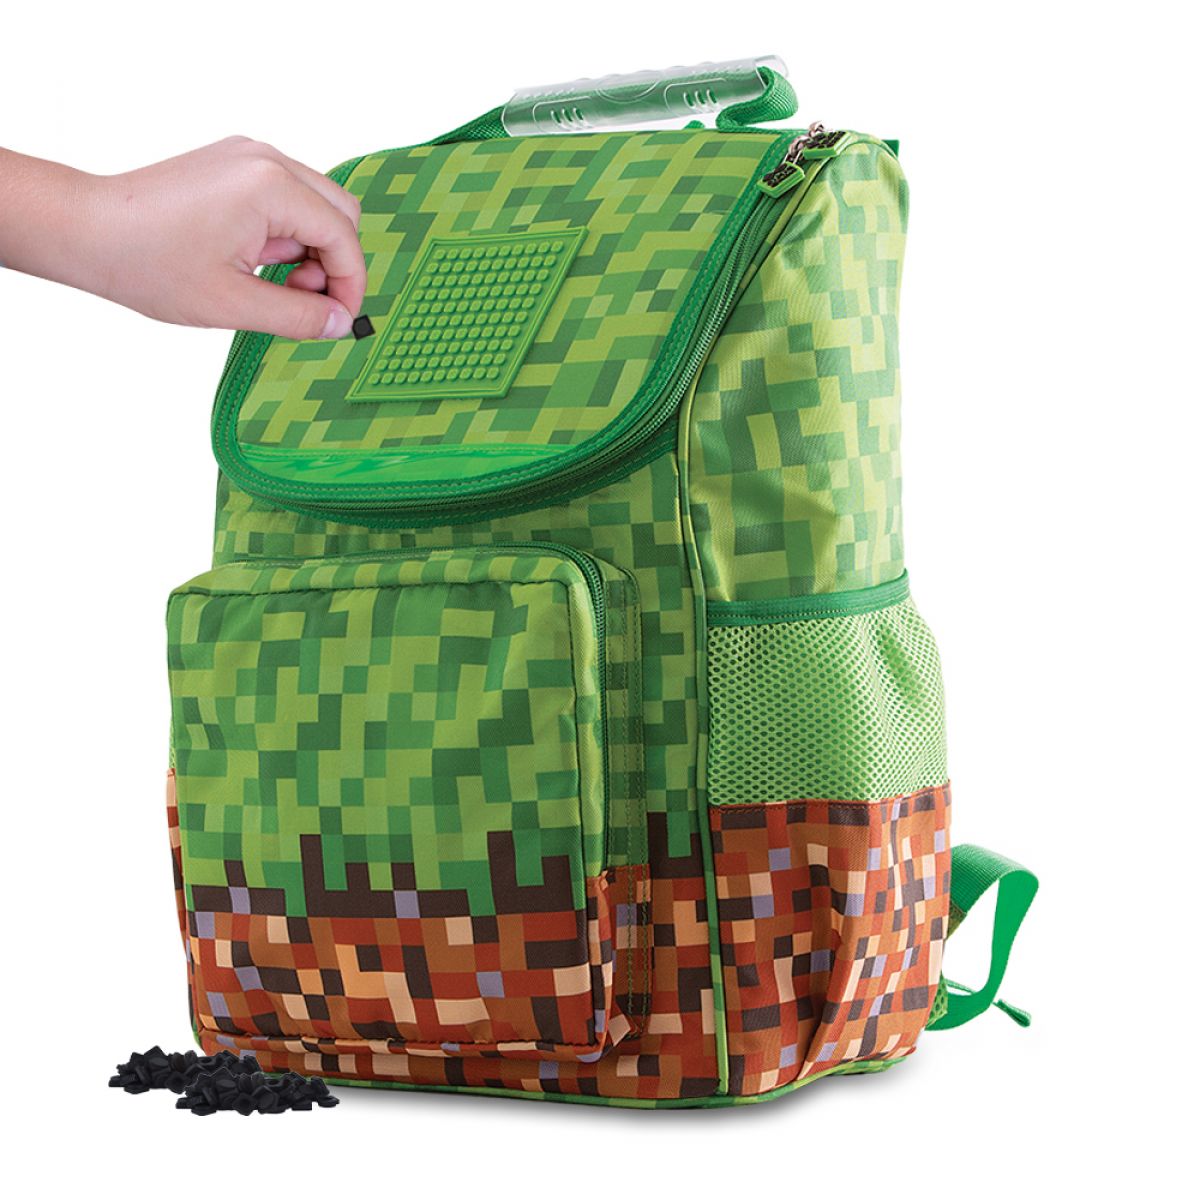 Pixie Crew školní aktovka Minecraft zeleno-hnědá s malým panelem